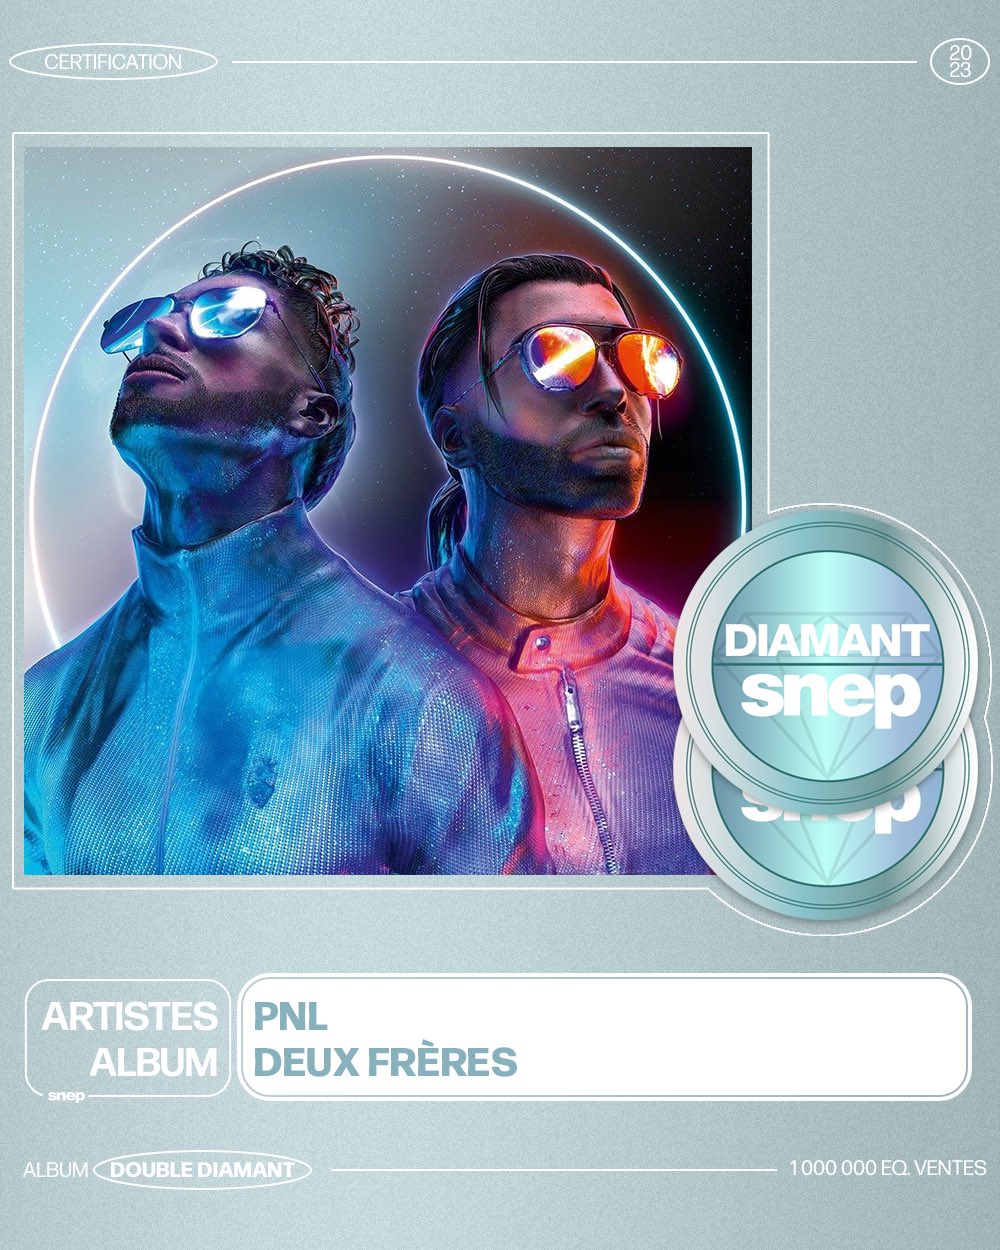 Le SNEP on X: L'album « Deux frères » de PNL est certifié Double Diamant !  💎💎 1 000 000 équivalents ventes 📈 Bravo ! 👏  / X